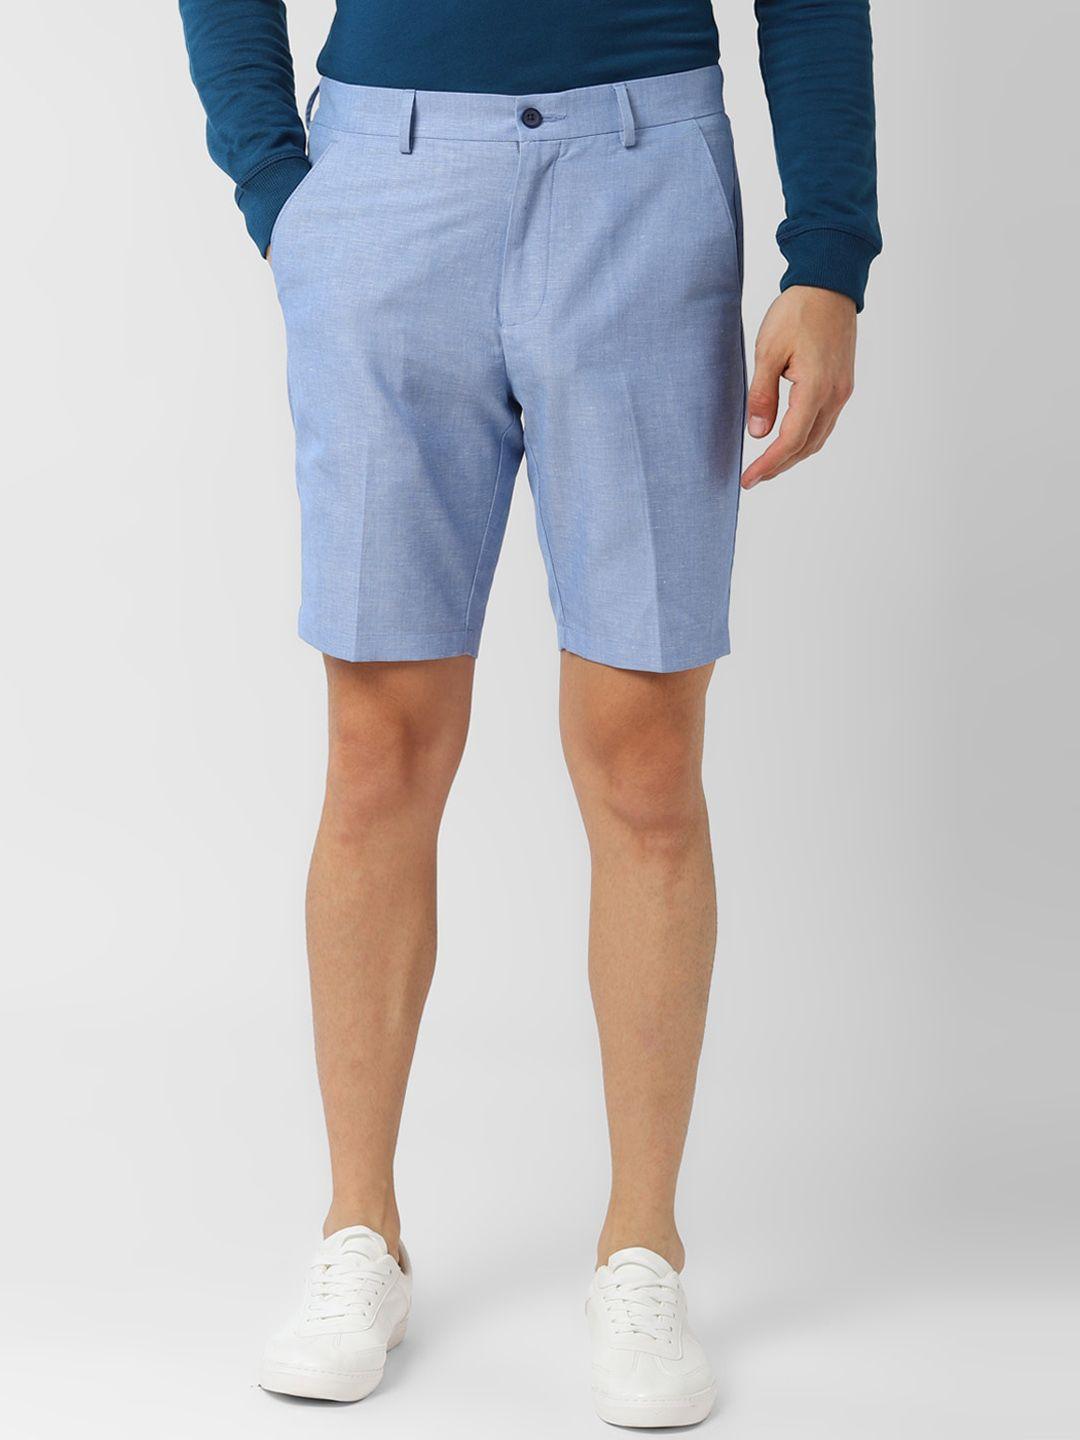 peter-england-men-blue-solid-slim-fit-regular-shorts